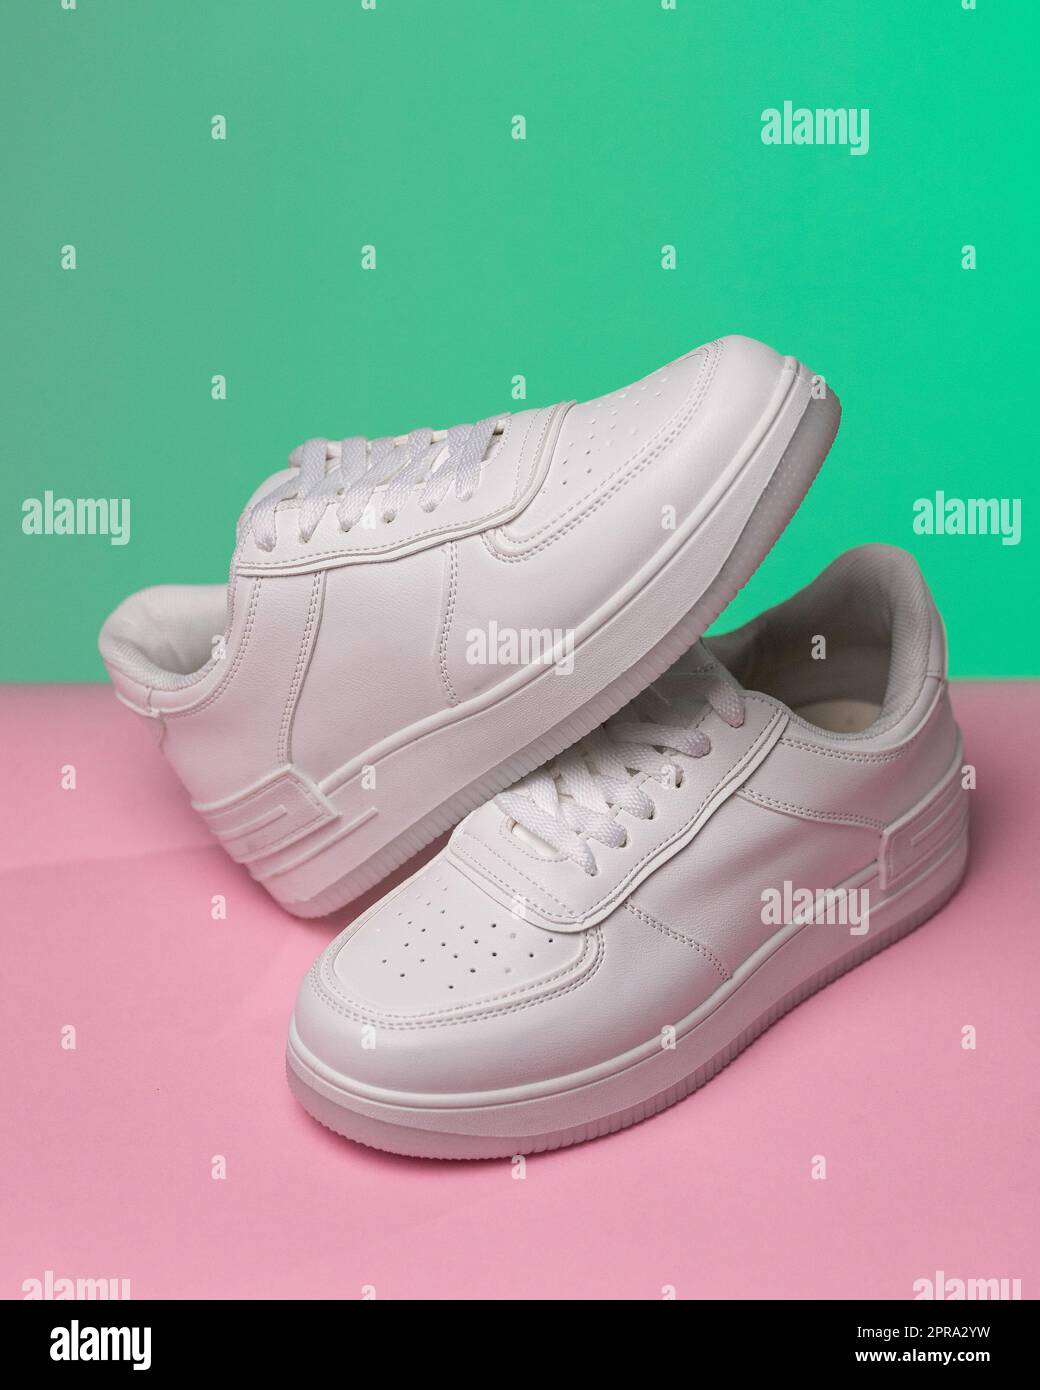 Werbefoto eines neuen weißen Sneakers für Damen oder Jugendliche mit farbigem Hintergrund. Stockfoto